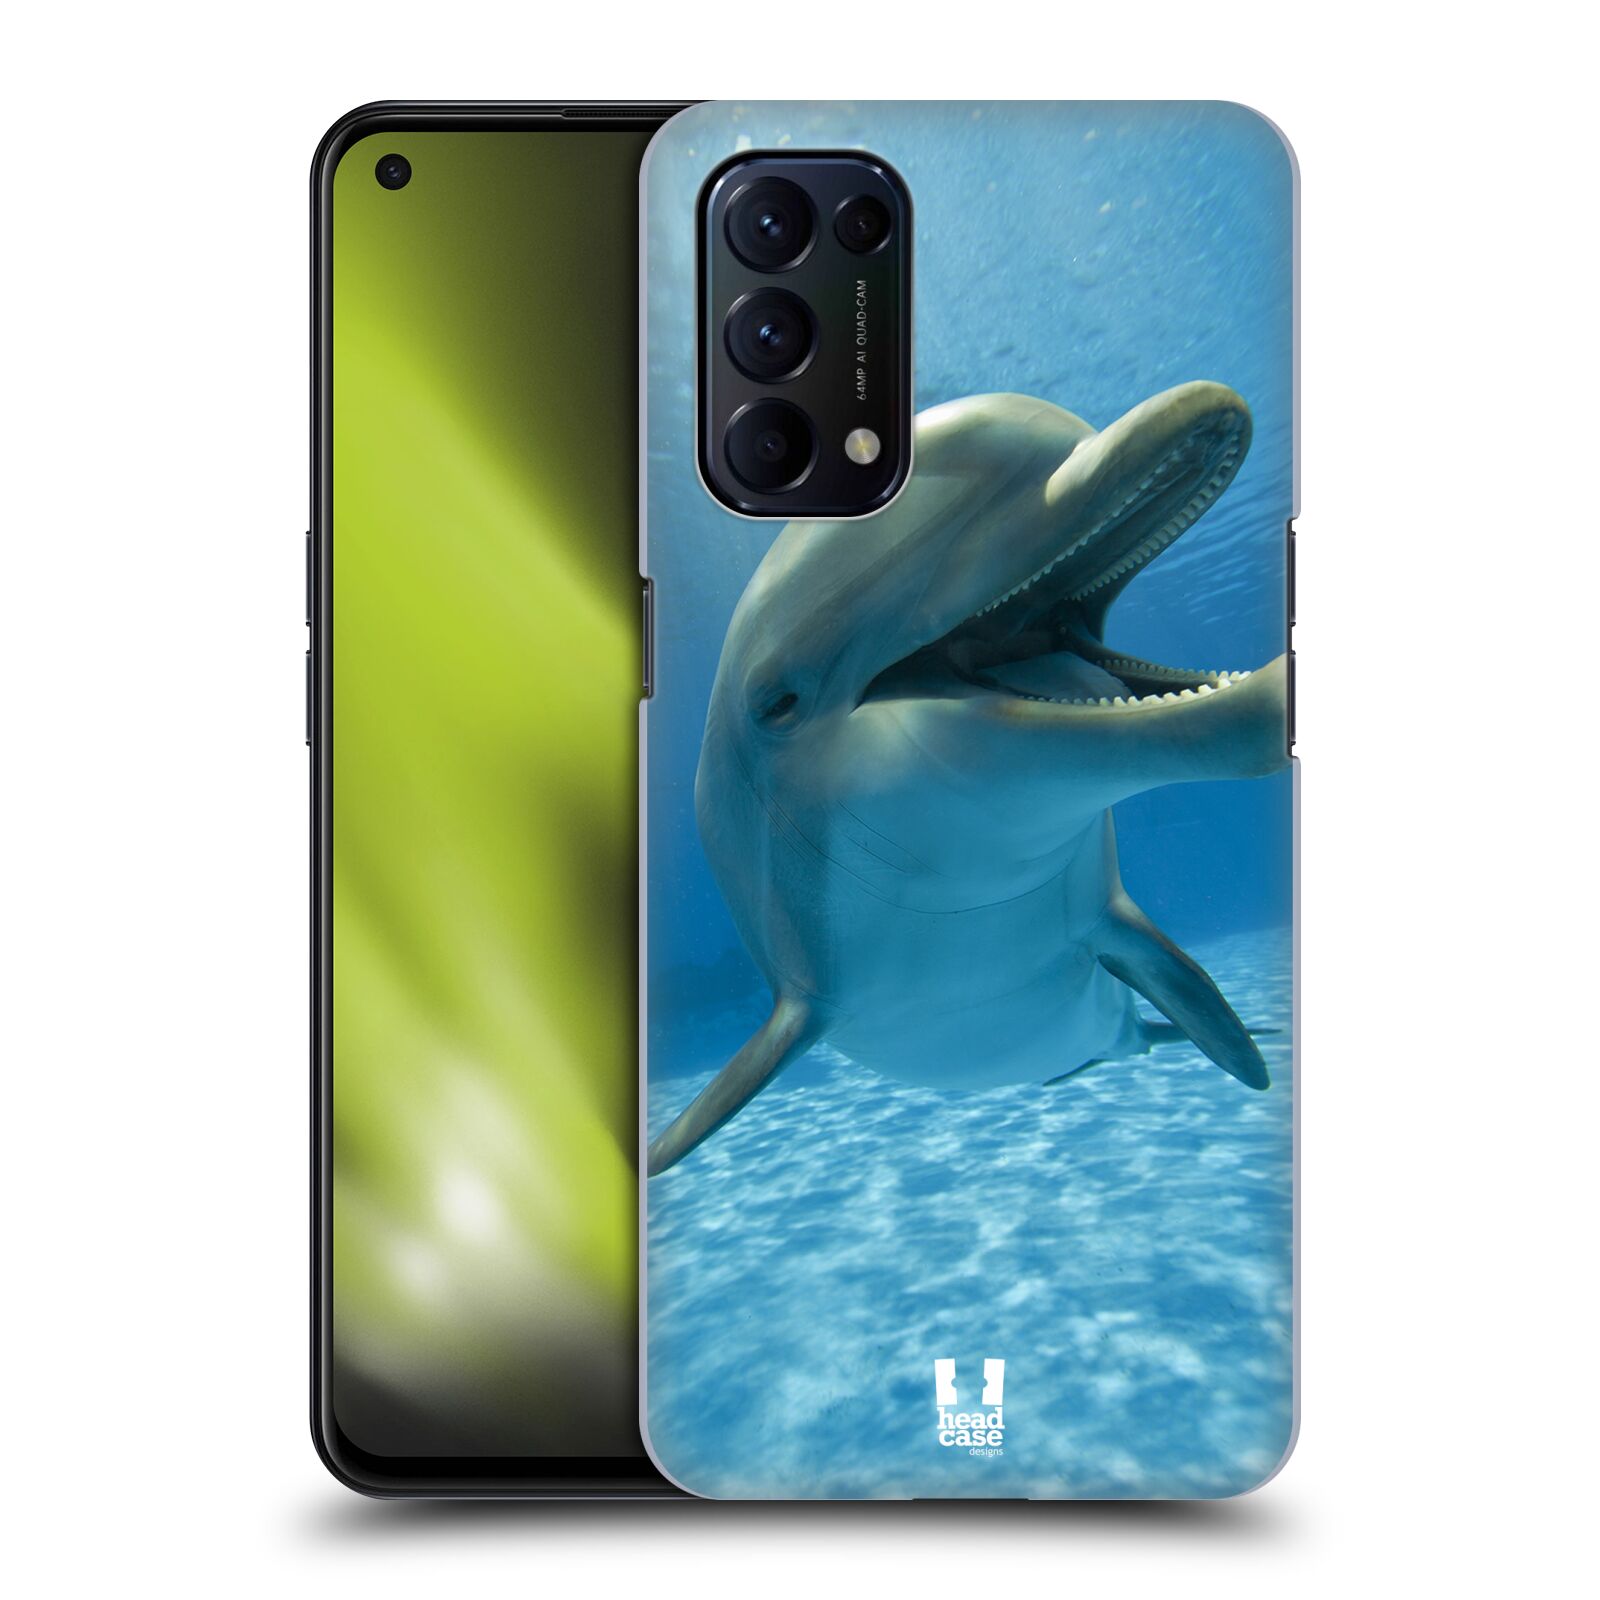 Zadní obal pro mobil Oppo Reno 5 (5G) - HEAD CASE - Svět zvířat delfín v moři